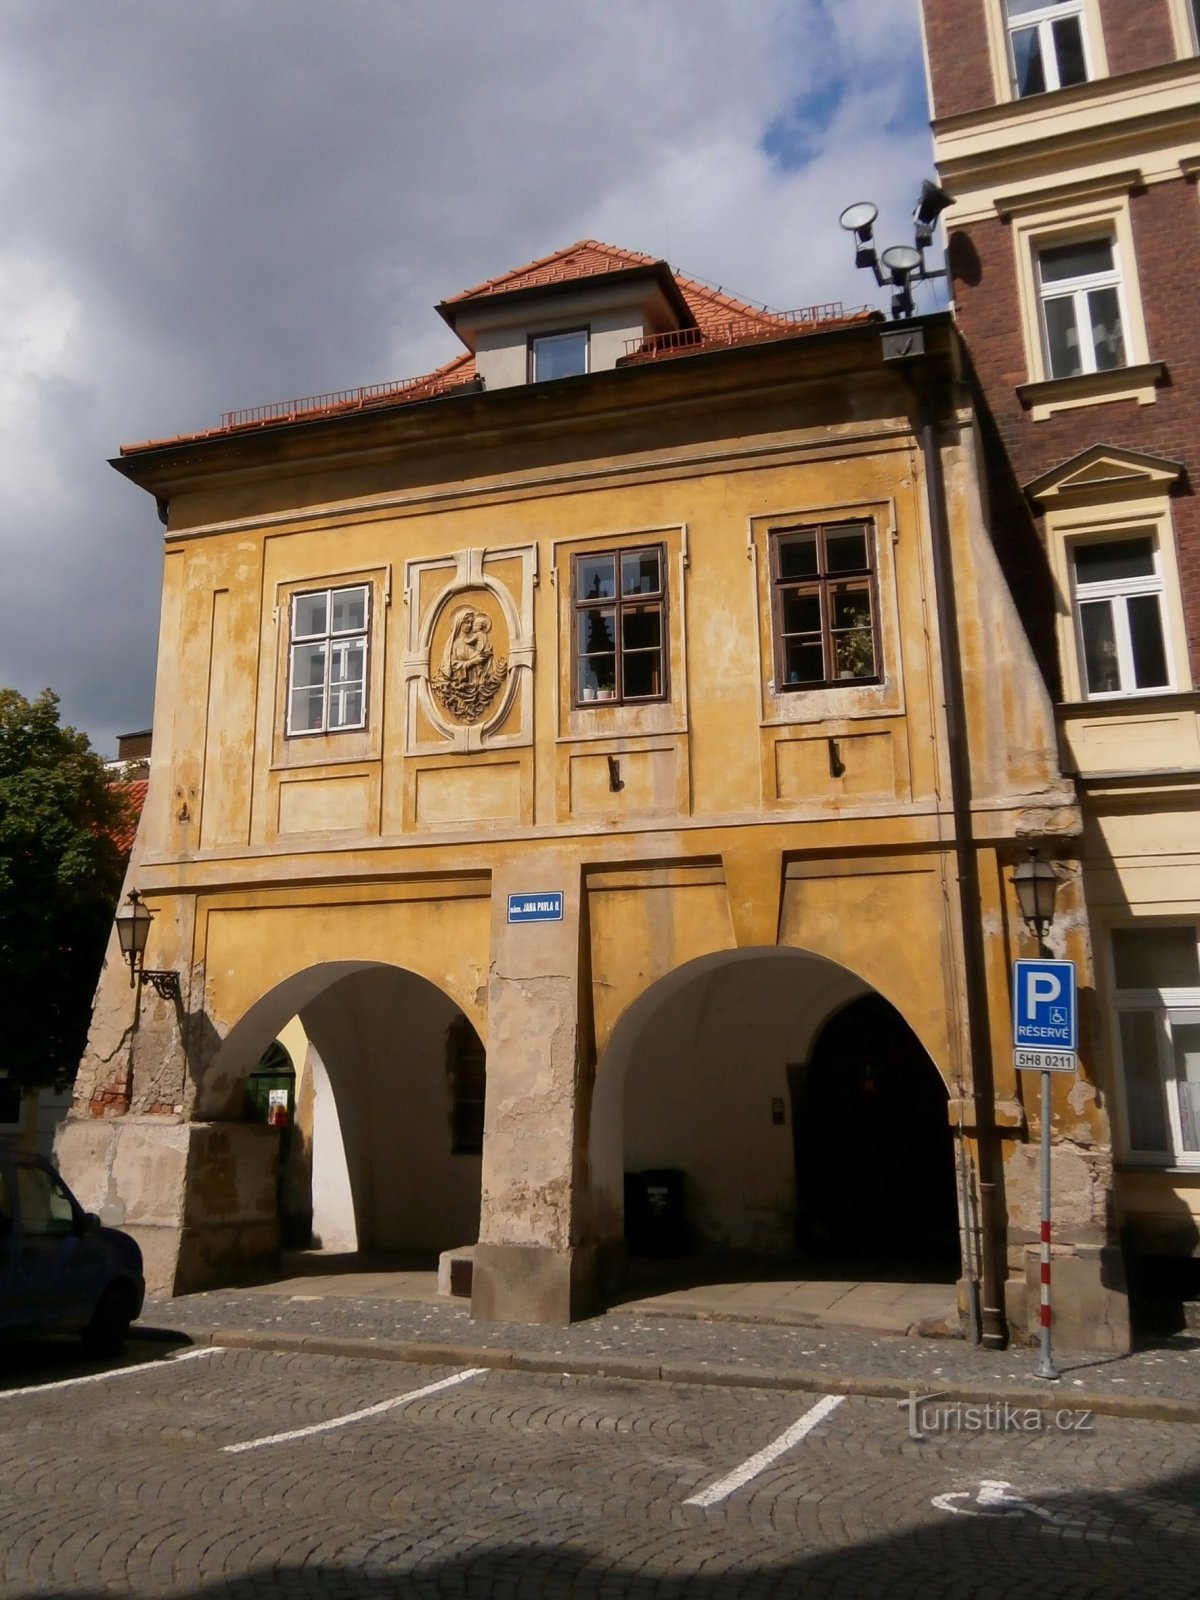 Náměstí Jana Pavla II. čp. 59 (Hradec Králové, 30.5.2015)